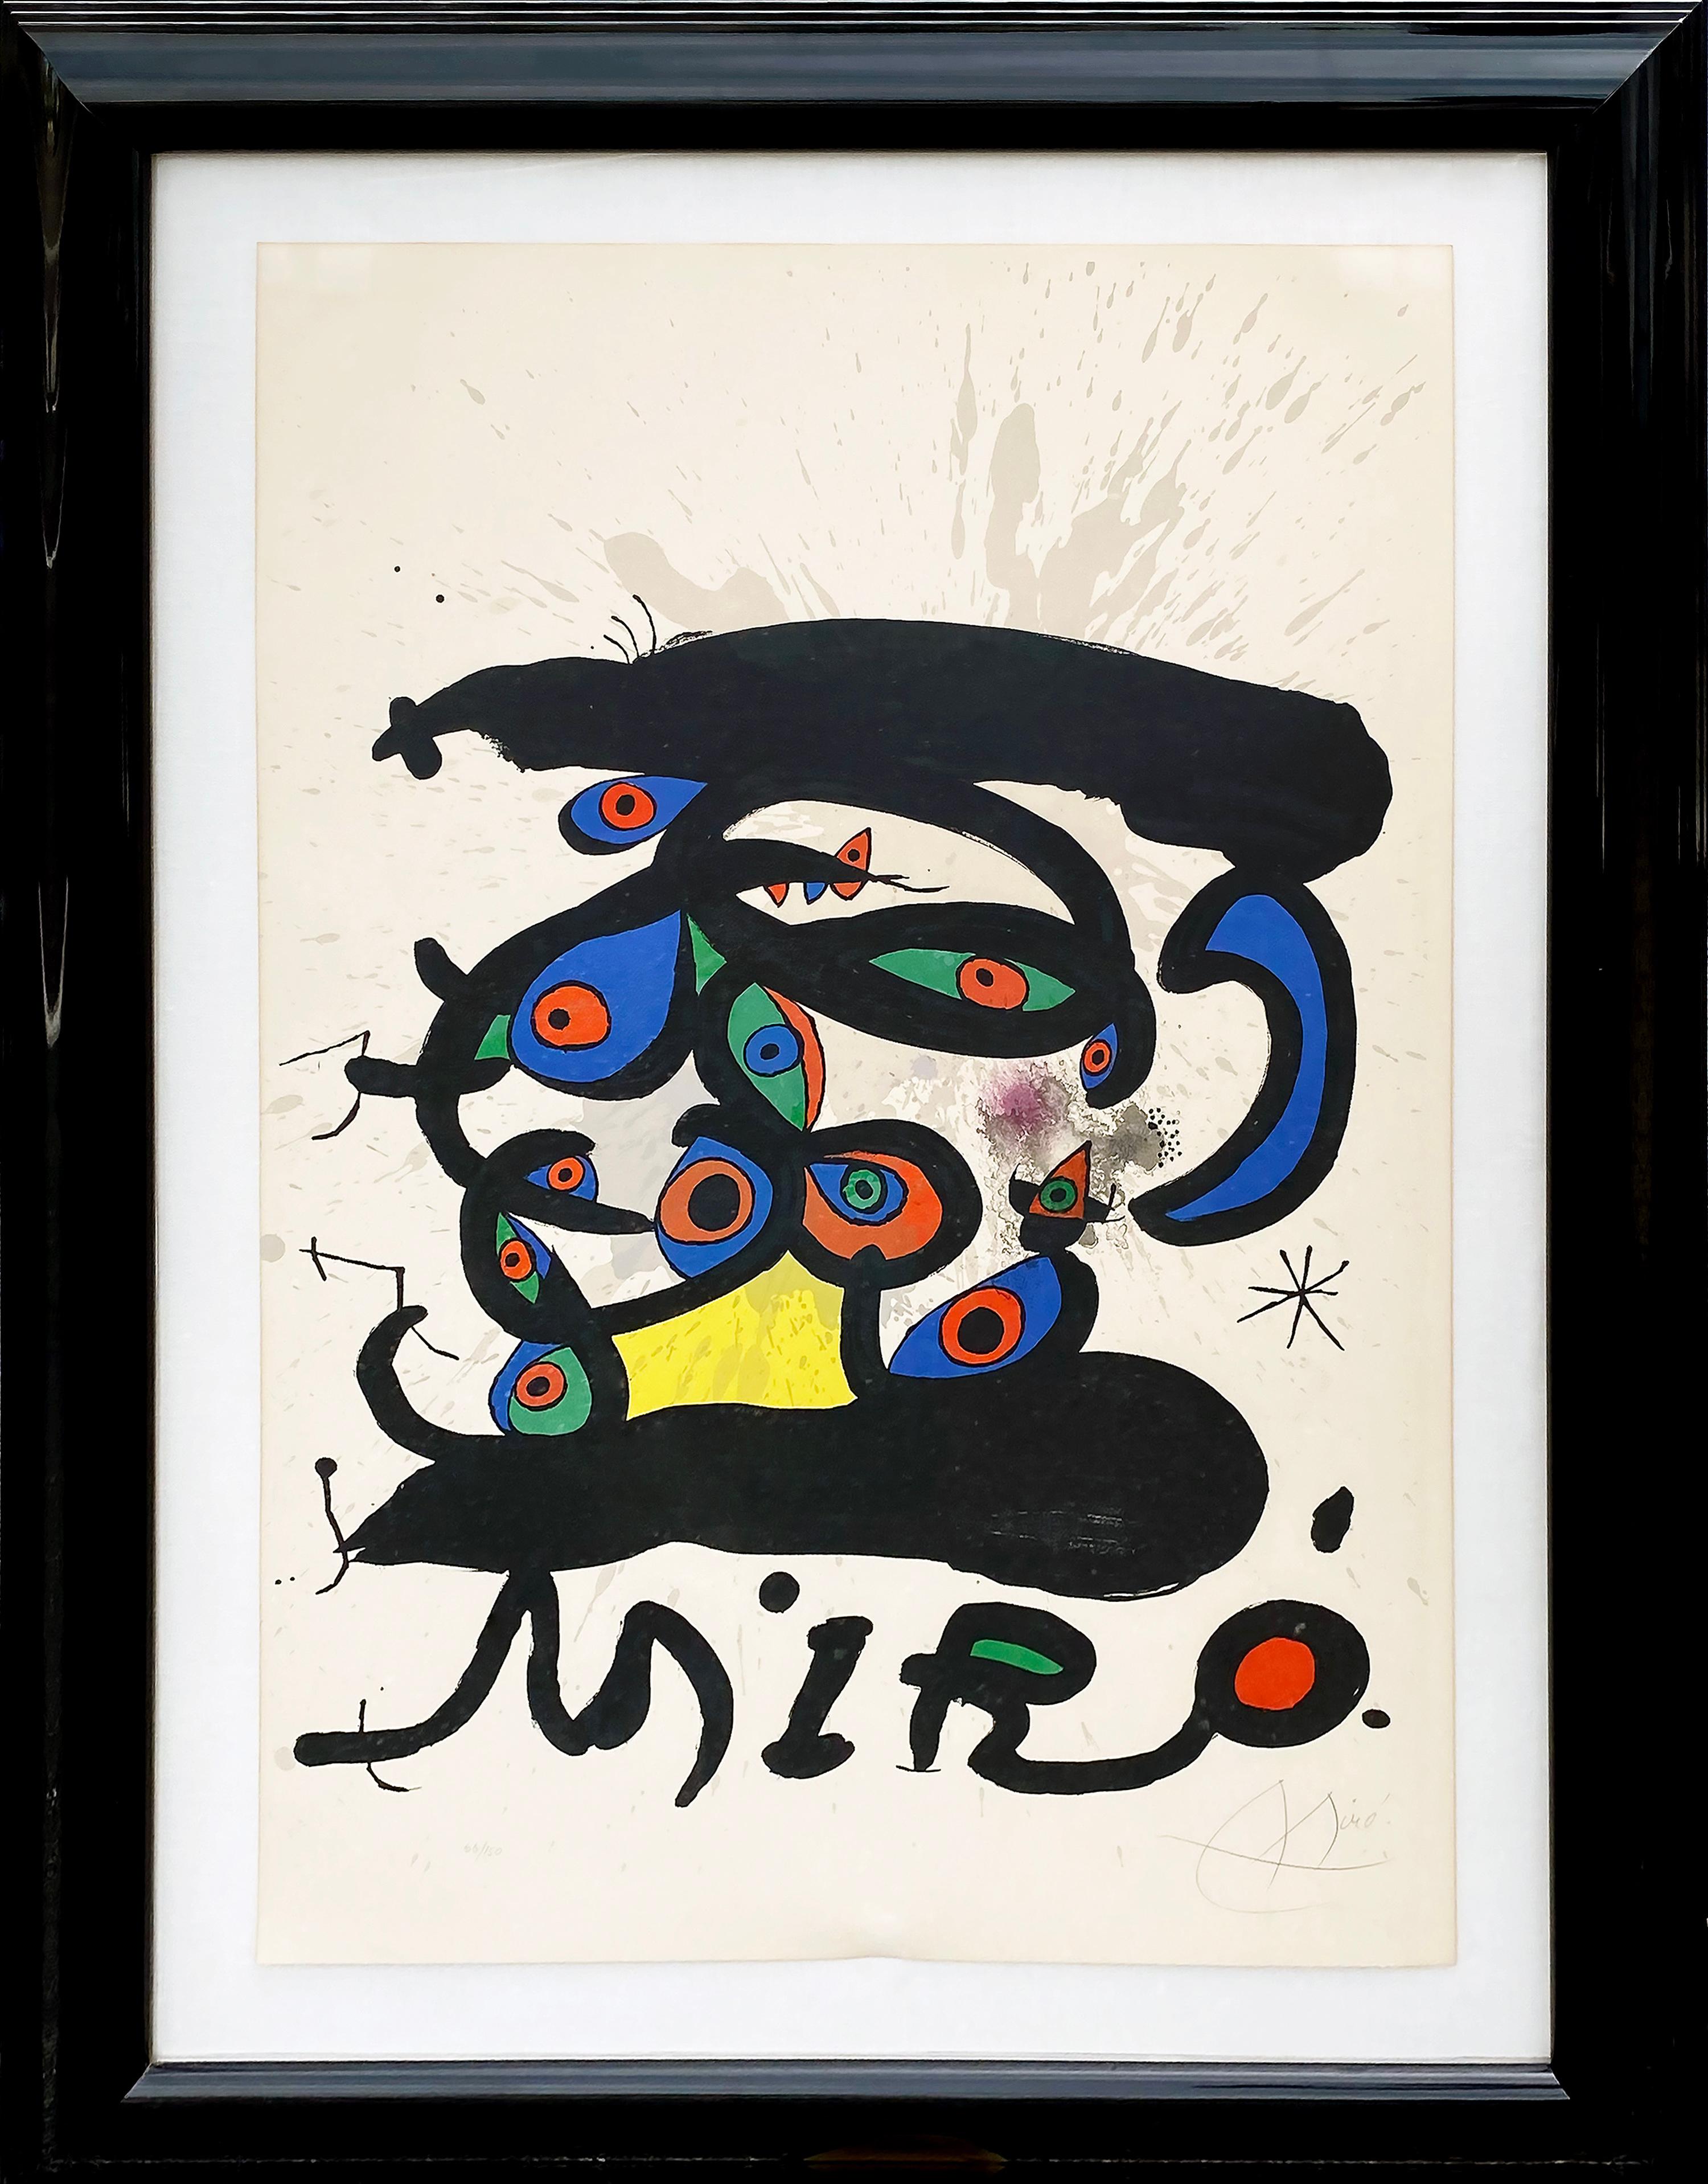 Affiche Pour L'Exhibition Peintres sur Papier Dessins - Print by Joan Miró